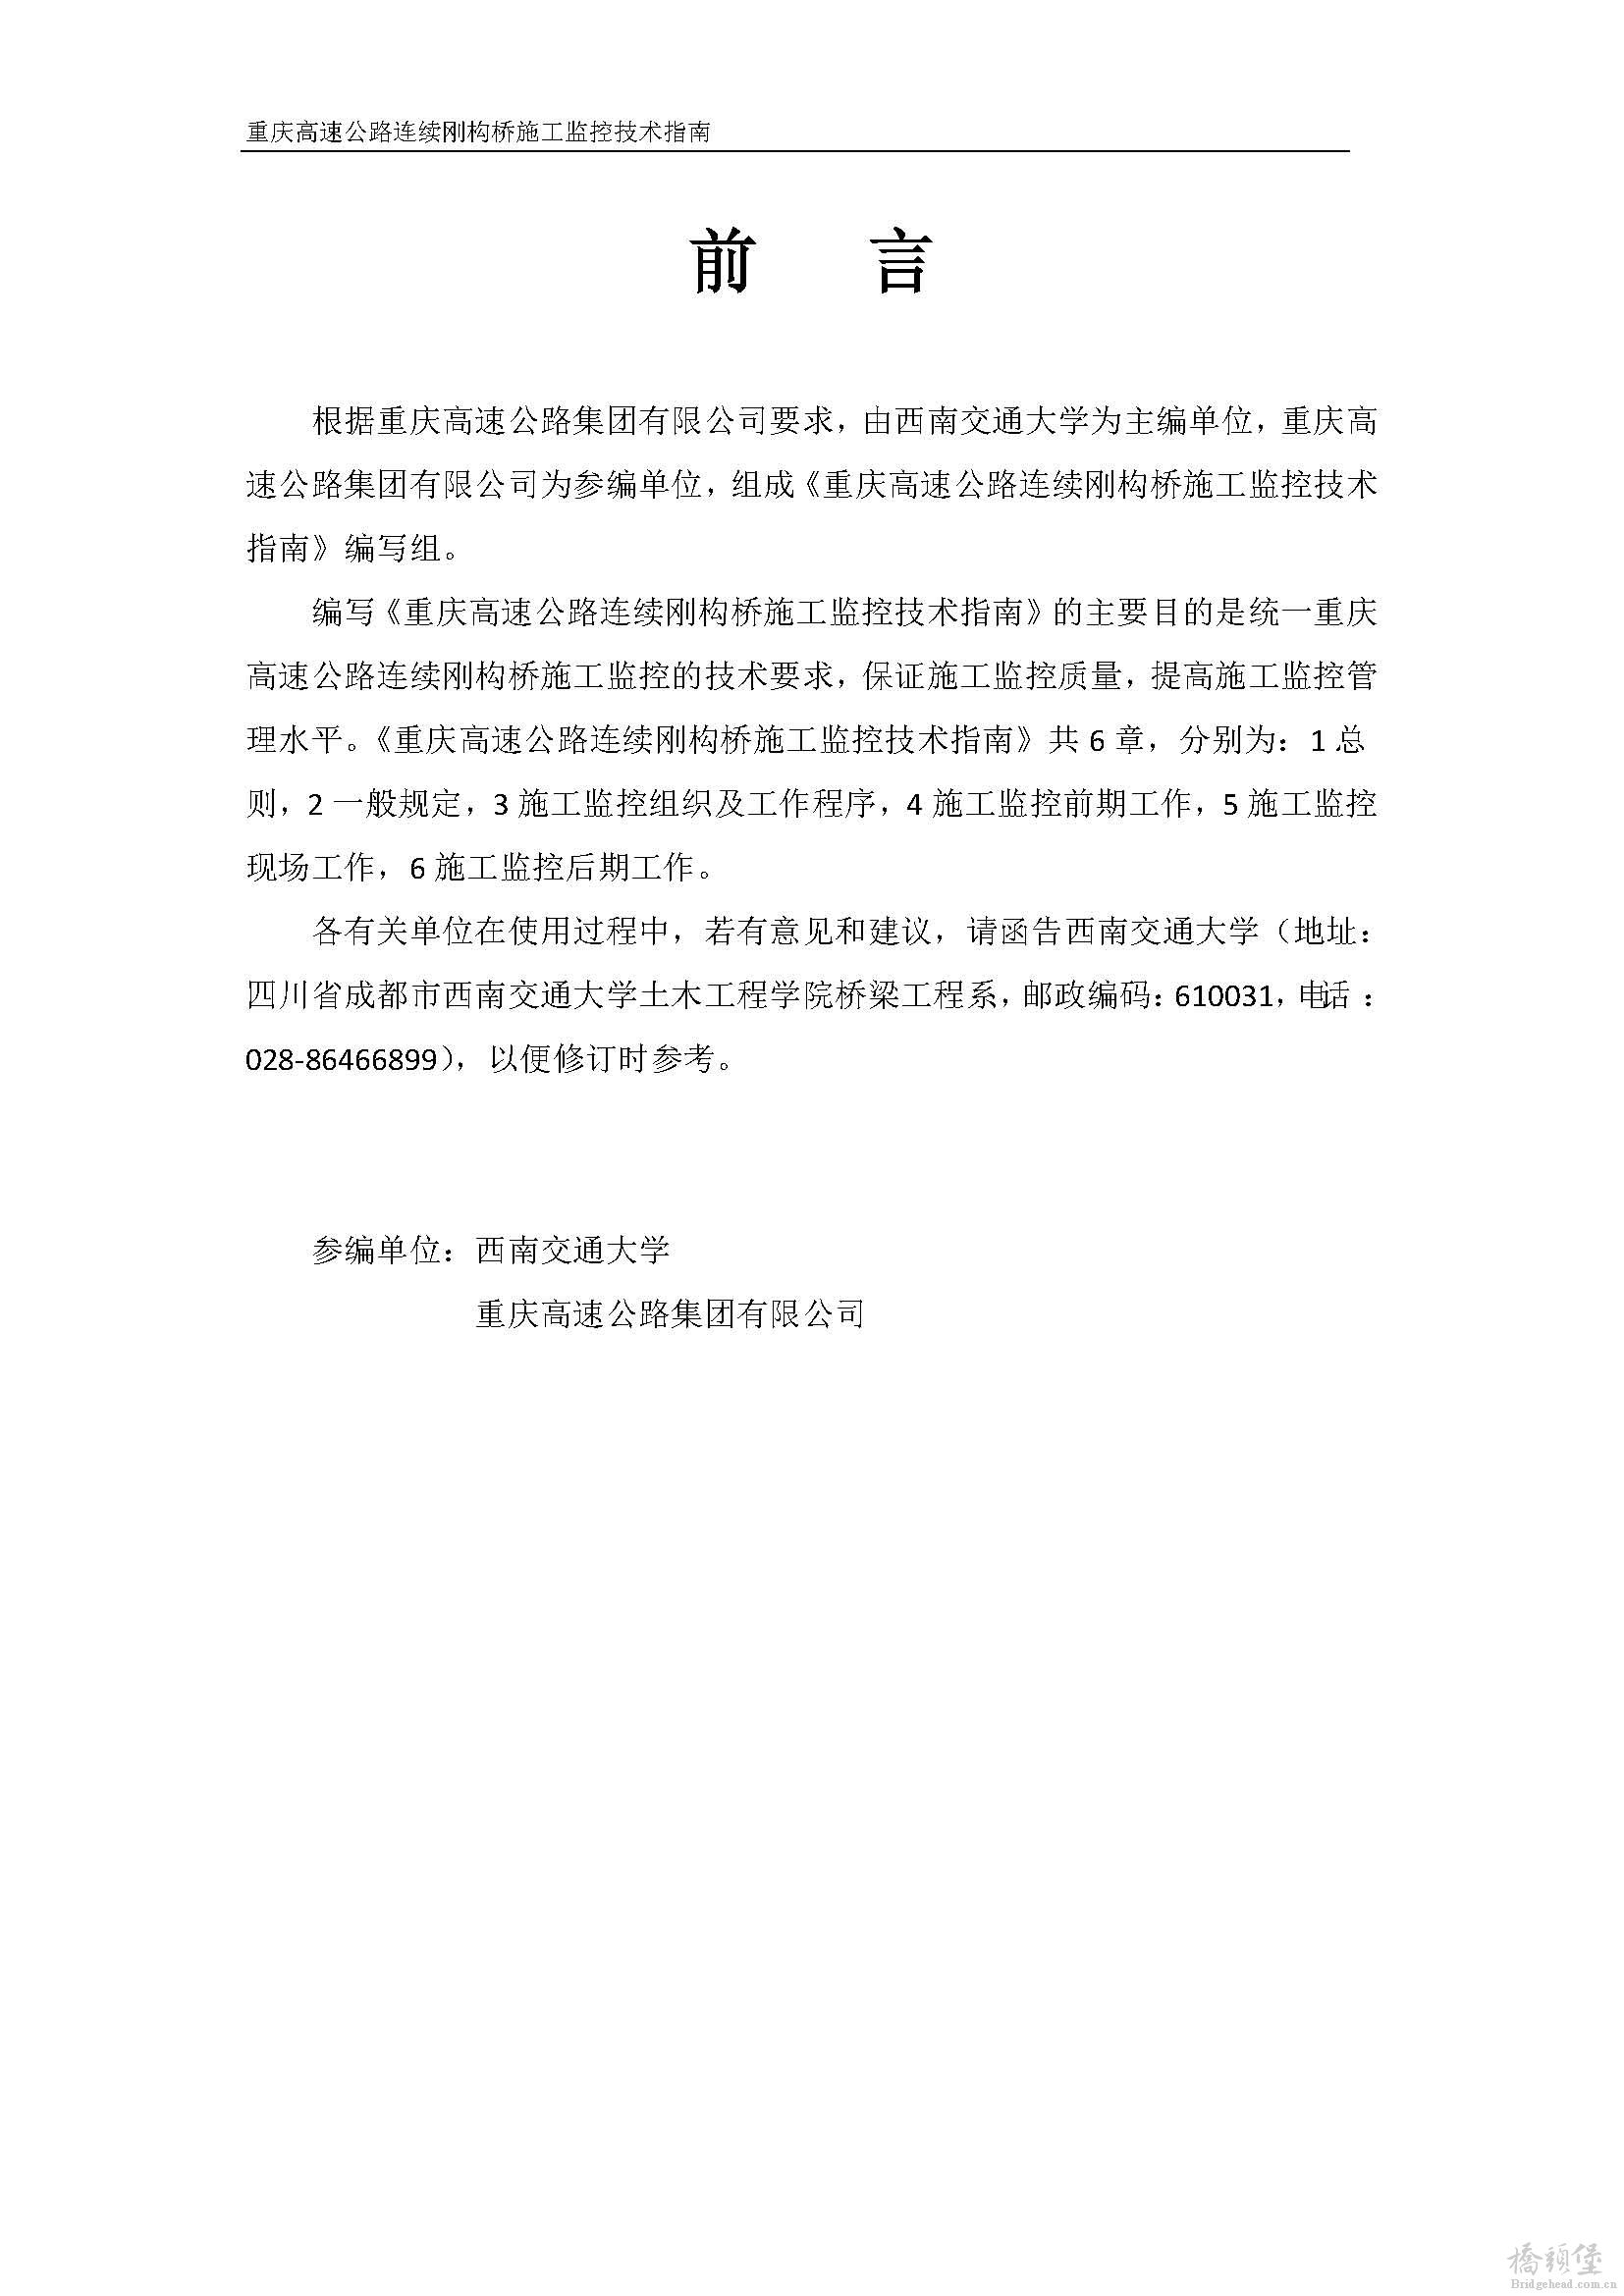 2010重庆高速公路连续刚构桥施工监控技术指南(最终版)_页面_02.jpg